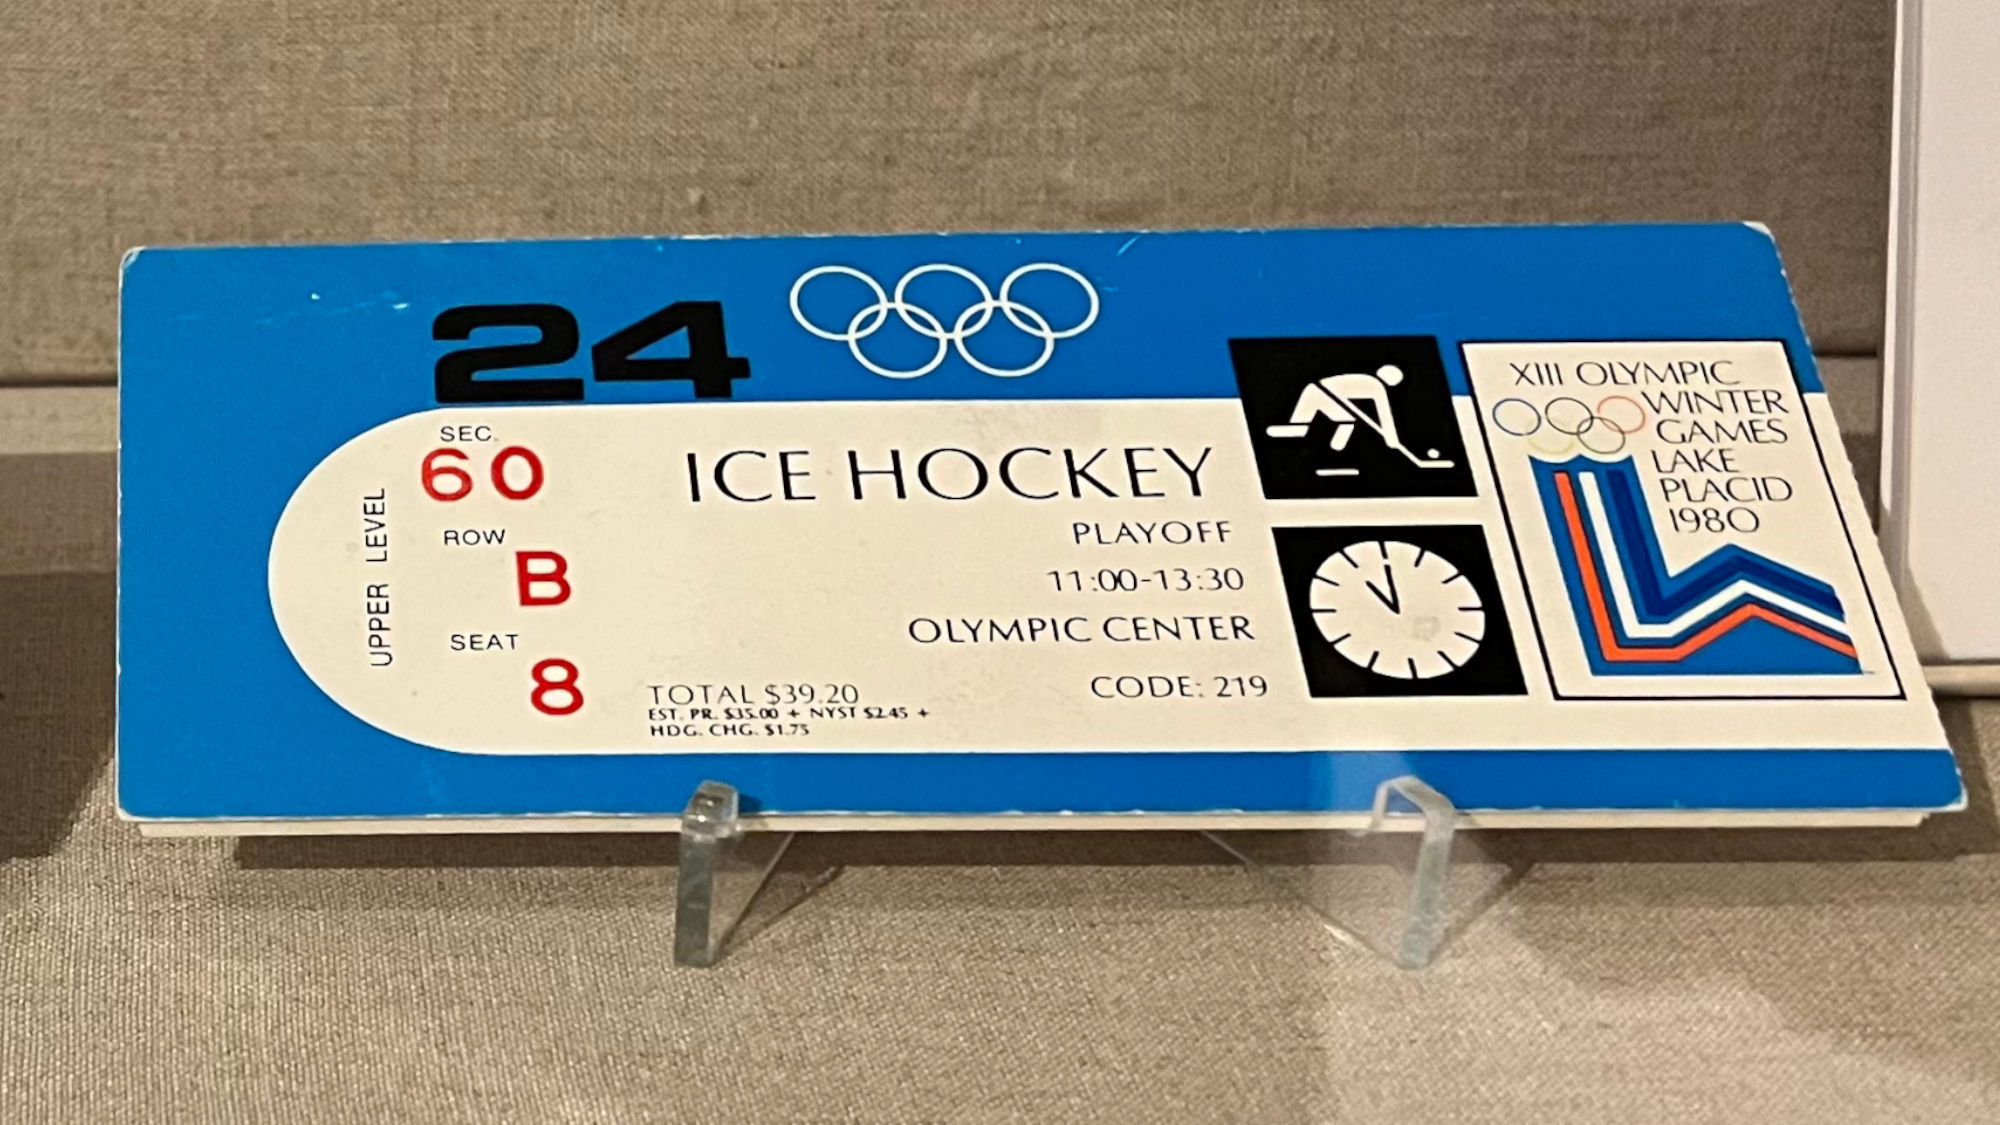 Lake Placid 1980 Hockey Tickets